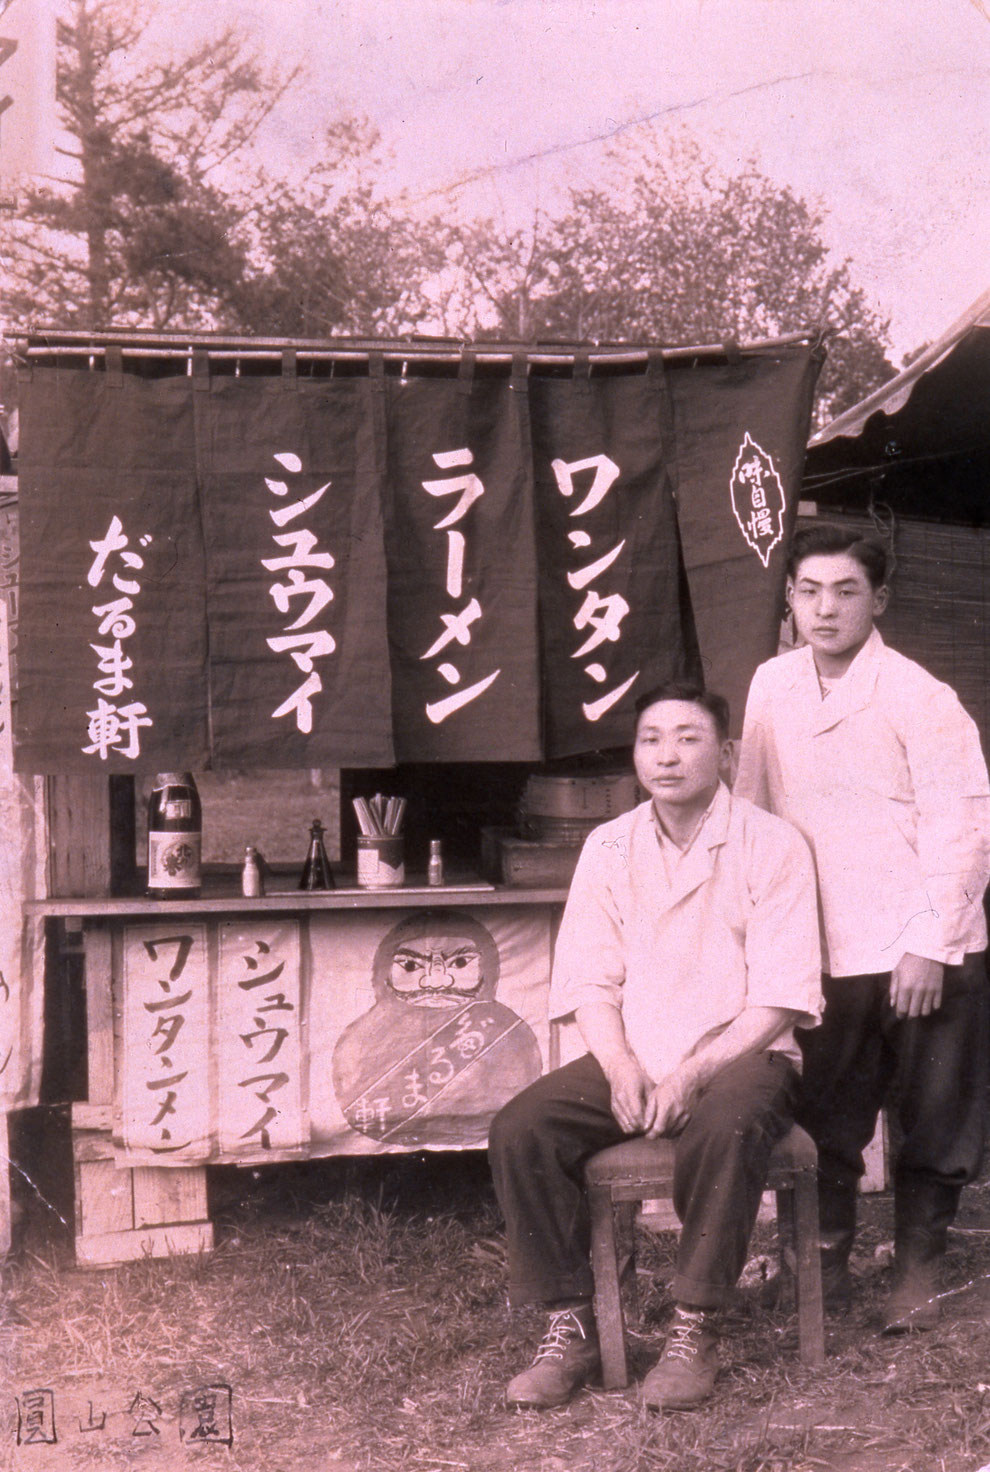 １９５０年頃のだるま軒の屋台。写真左が西山仙治、右が西山孝之（初代西山製麺社長）。（西山製麺提供）